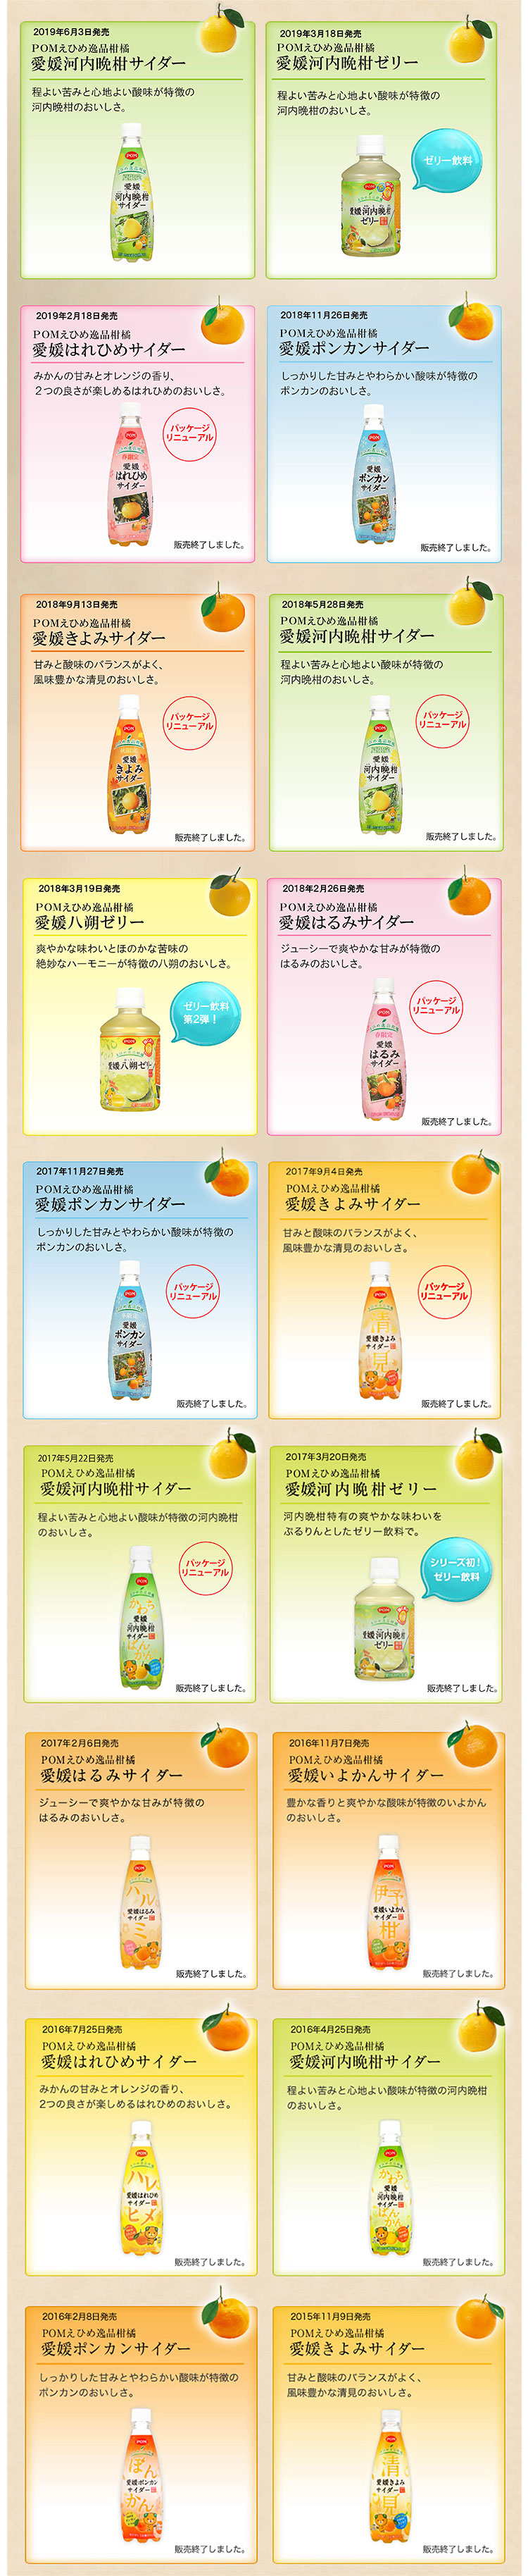 えひめ逸品柑橘シリーズ190524更新.jpg